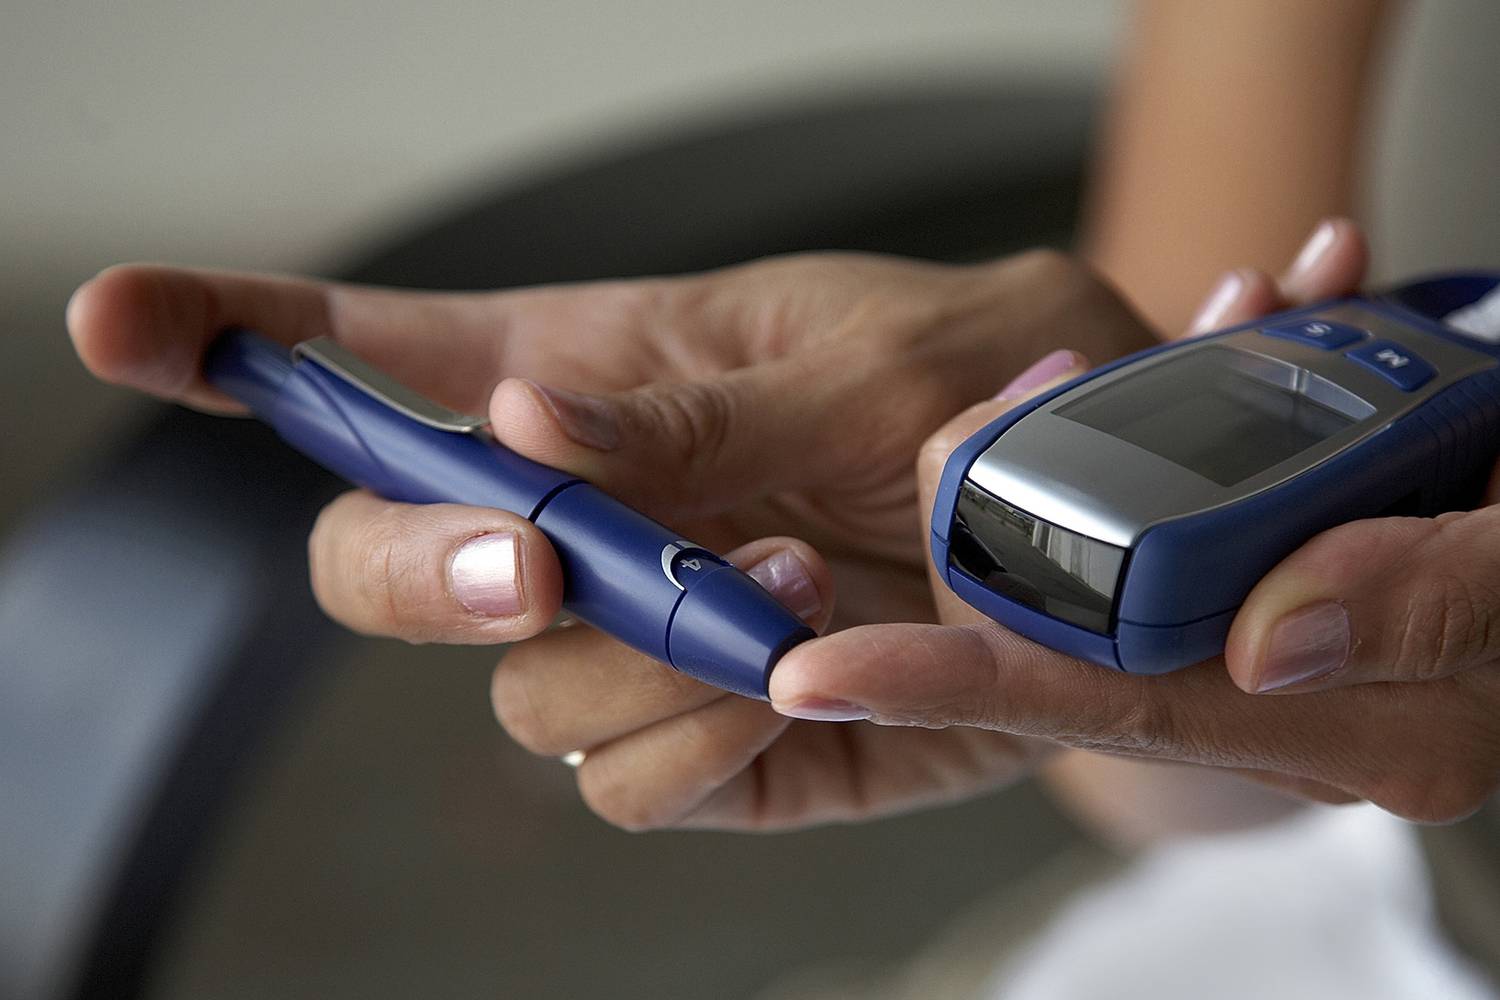 cukorbetegség 2 típusú inzulinfüggő kezelés az inzulin túladagolása a diabetes mellitus kezelésében gyermekeknél vezet a fejlődés a kóma